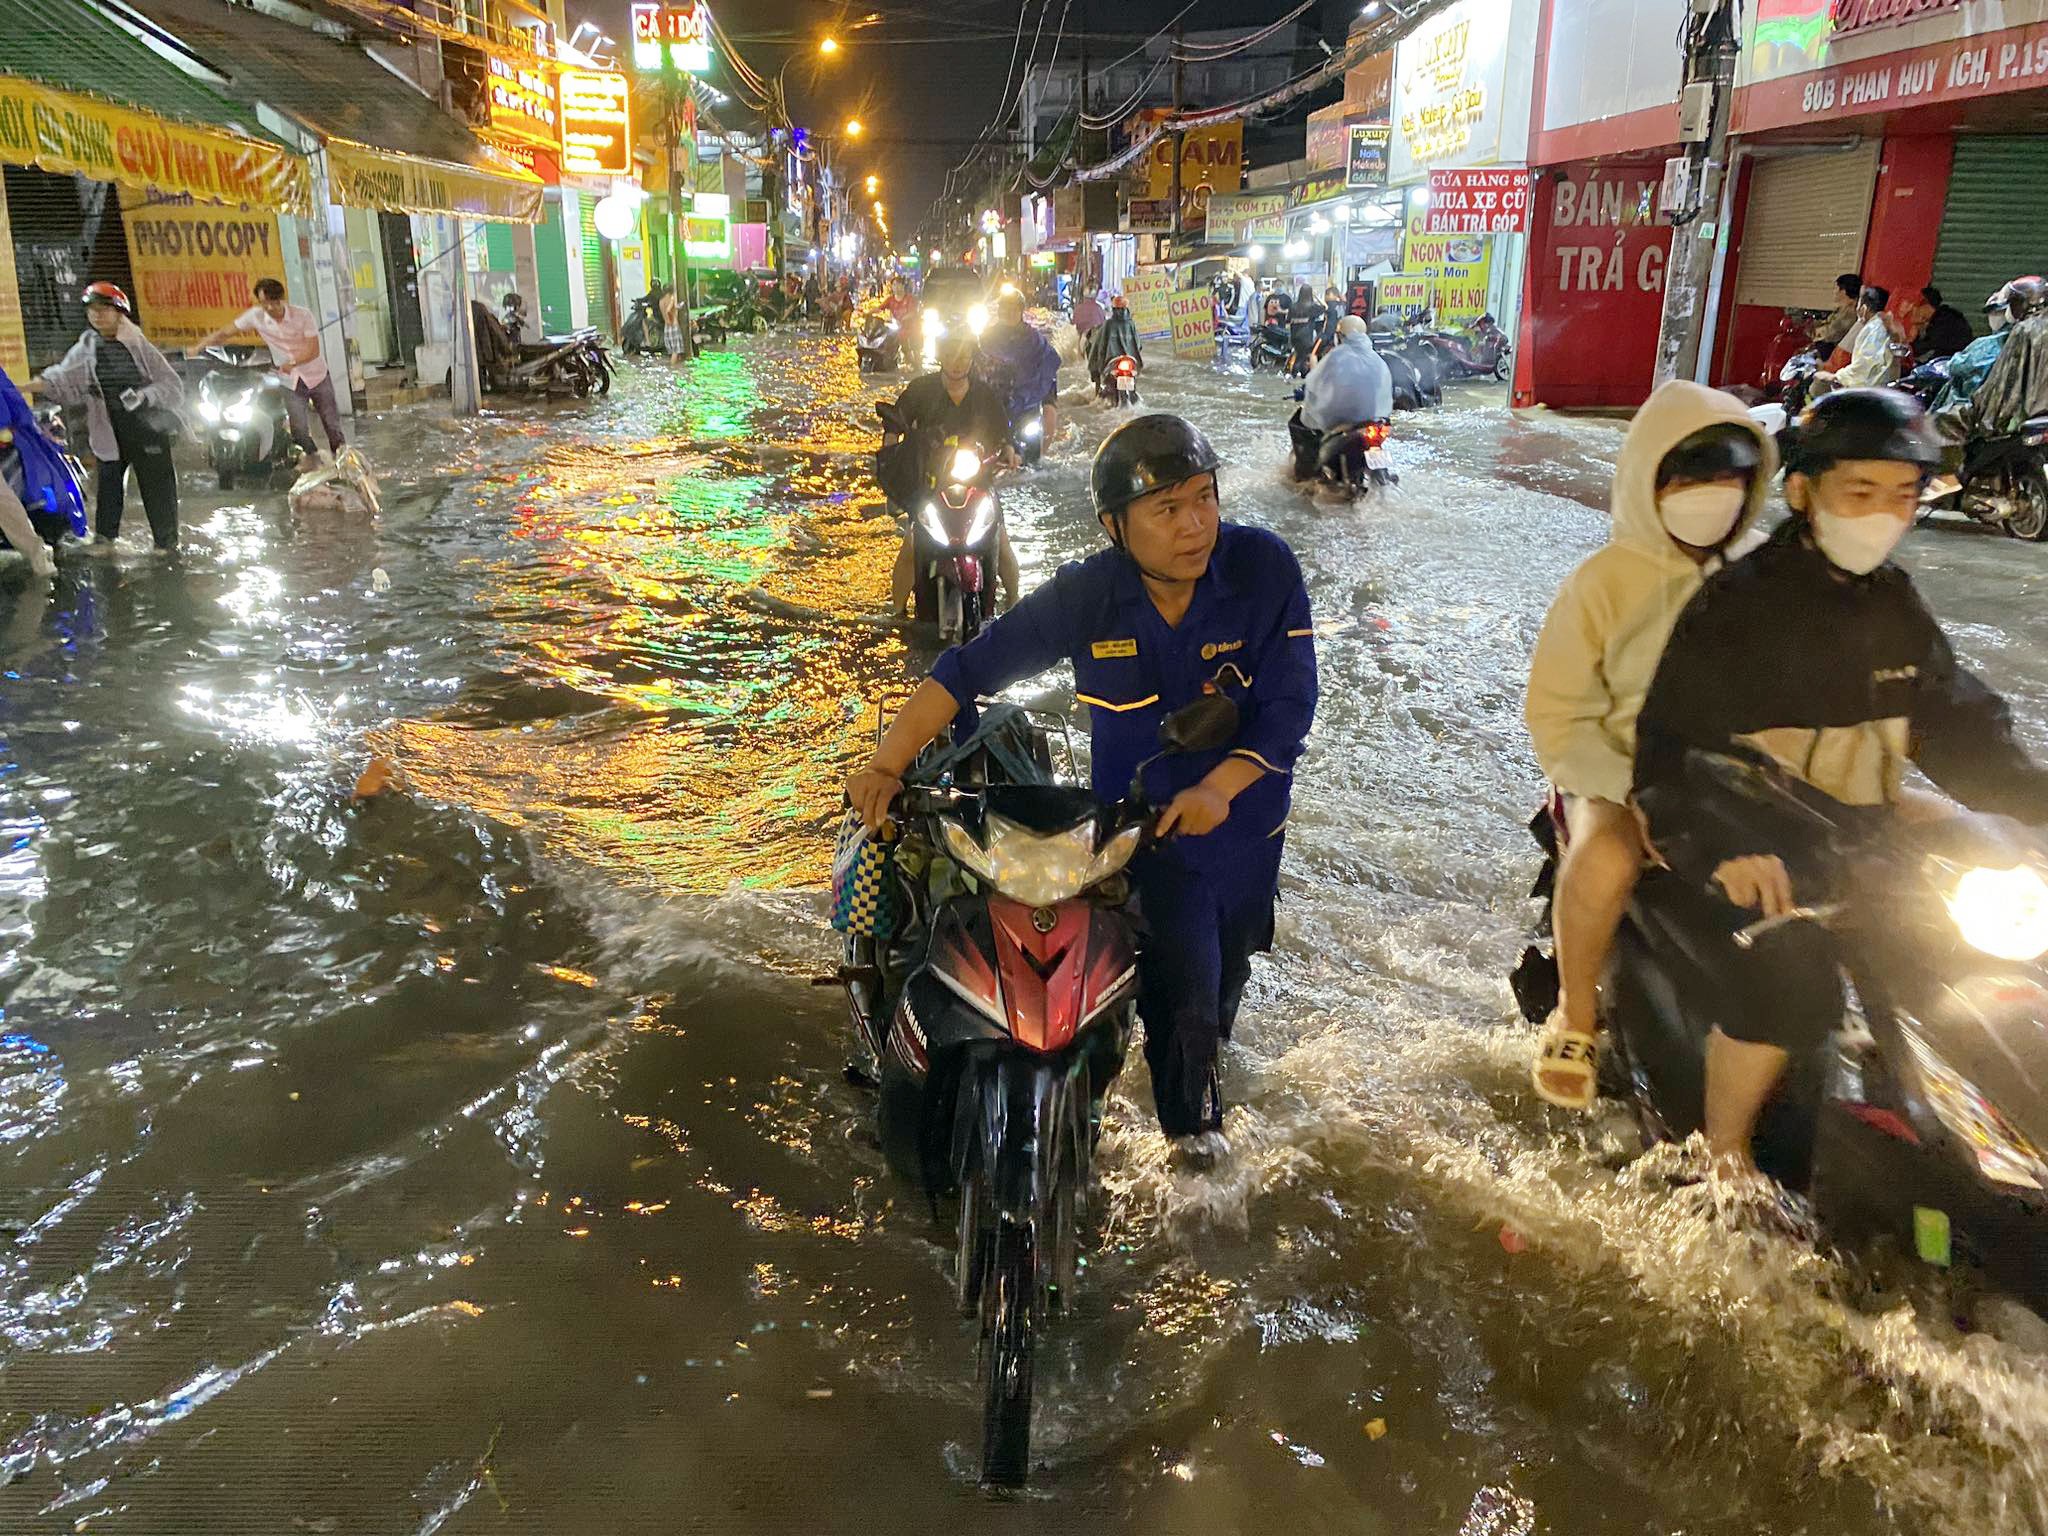 Tối 17/9, cơn mưa lớn kéo dài hơn một giờ khiến hàng loạt tuyến đường ở quận Tân Bình, Gò Vấp, quận 12 (TP.HCM) ngập sâu. Tại đường Phan Huy Ích (quận Tân Bình) nước ngập hơn 0,5m kéo dài hơn 1km khiến hàng loạt xe chết máy.